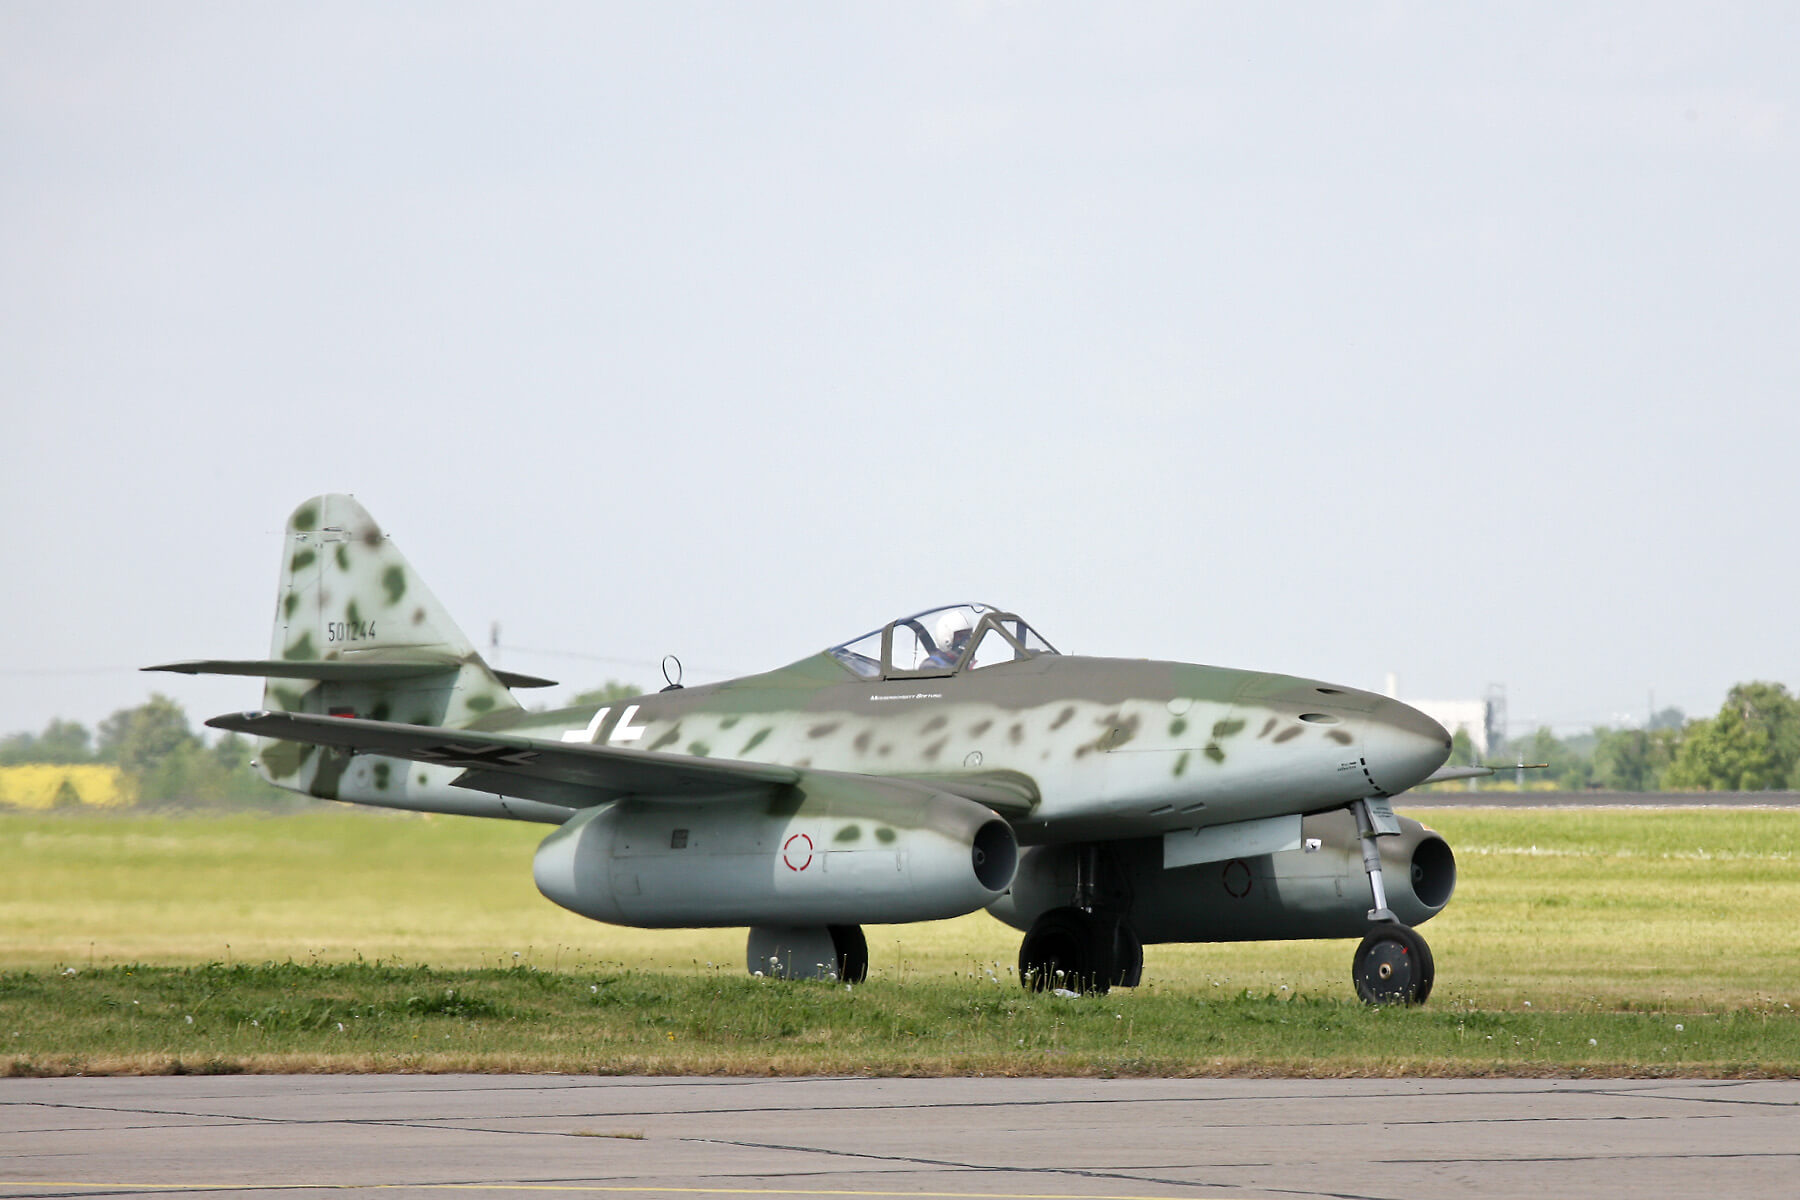 Первый полет на сверхзвуковой скорости. Me 262 Schwalbe, возможно, был первым самолетом, который достиг скорости звука. Фото.